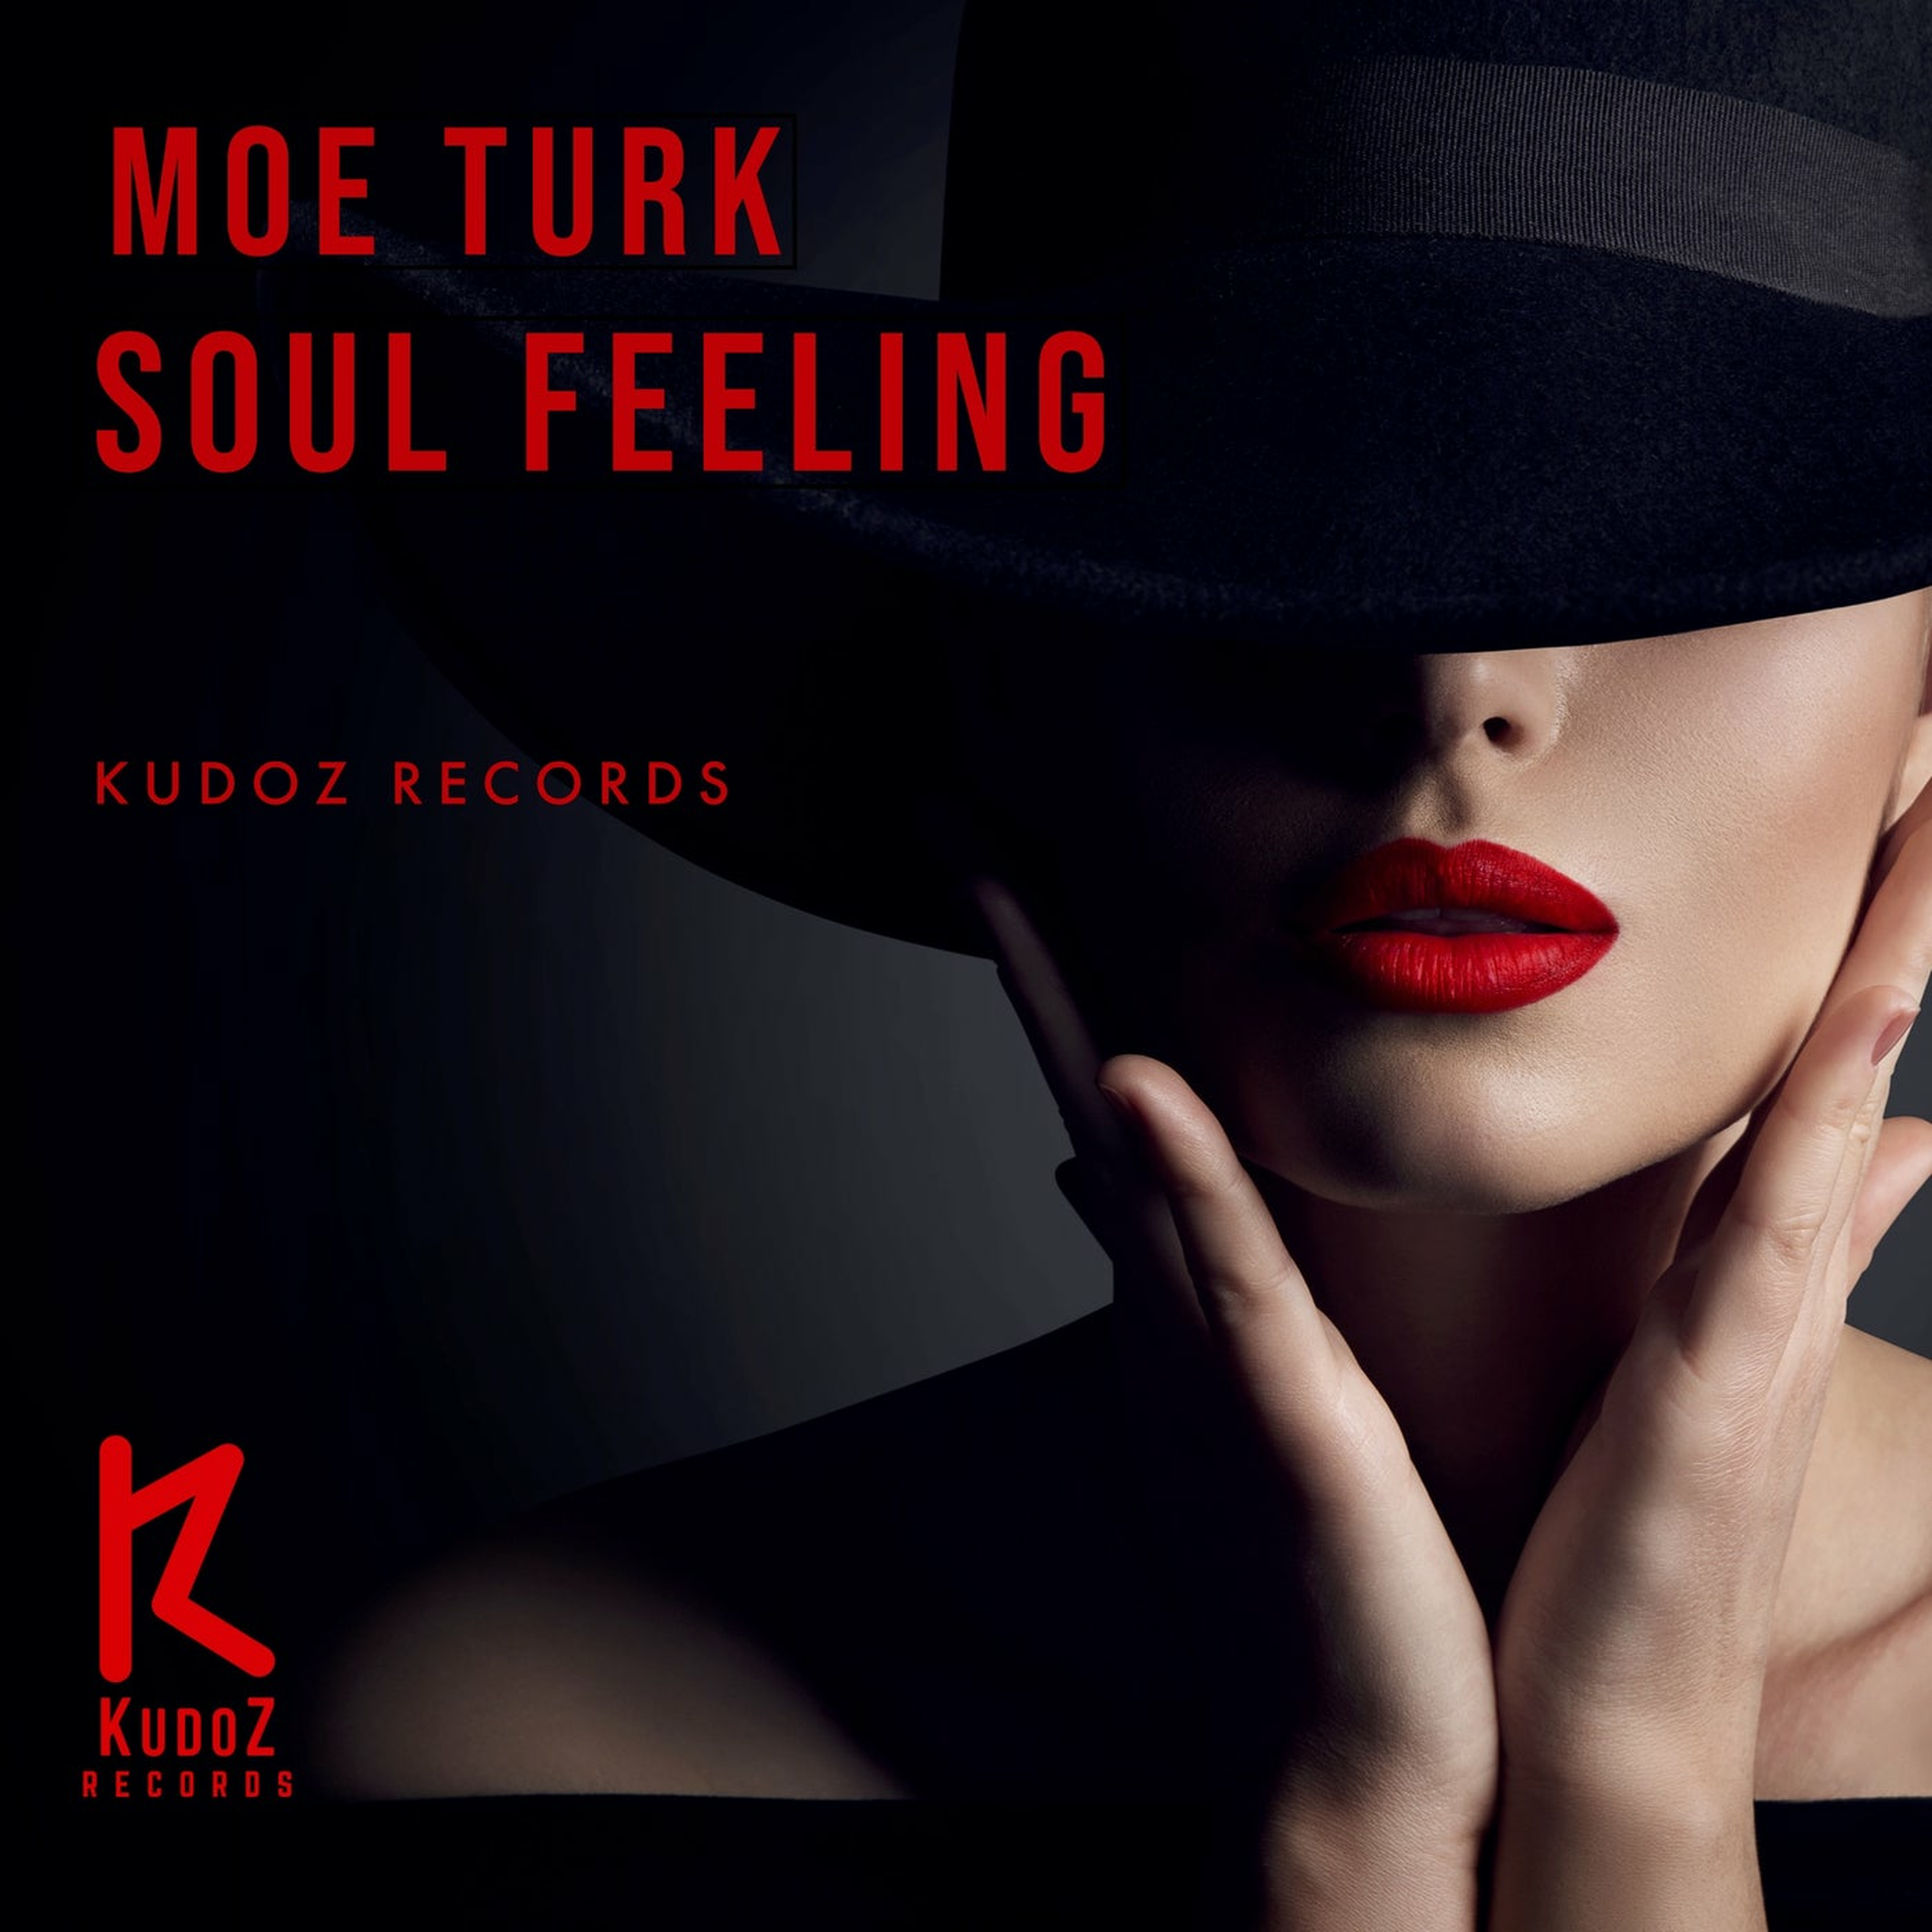 Feel the soul. Флаеры гламурные. _Soul_Turk_. Moe Turk - Spirit Soul records Label Showcase. Soul feel.